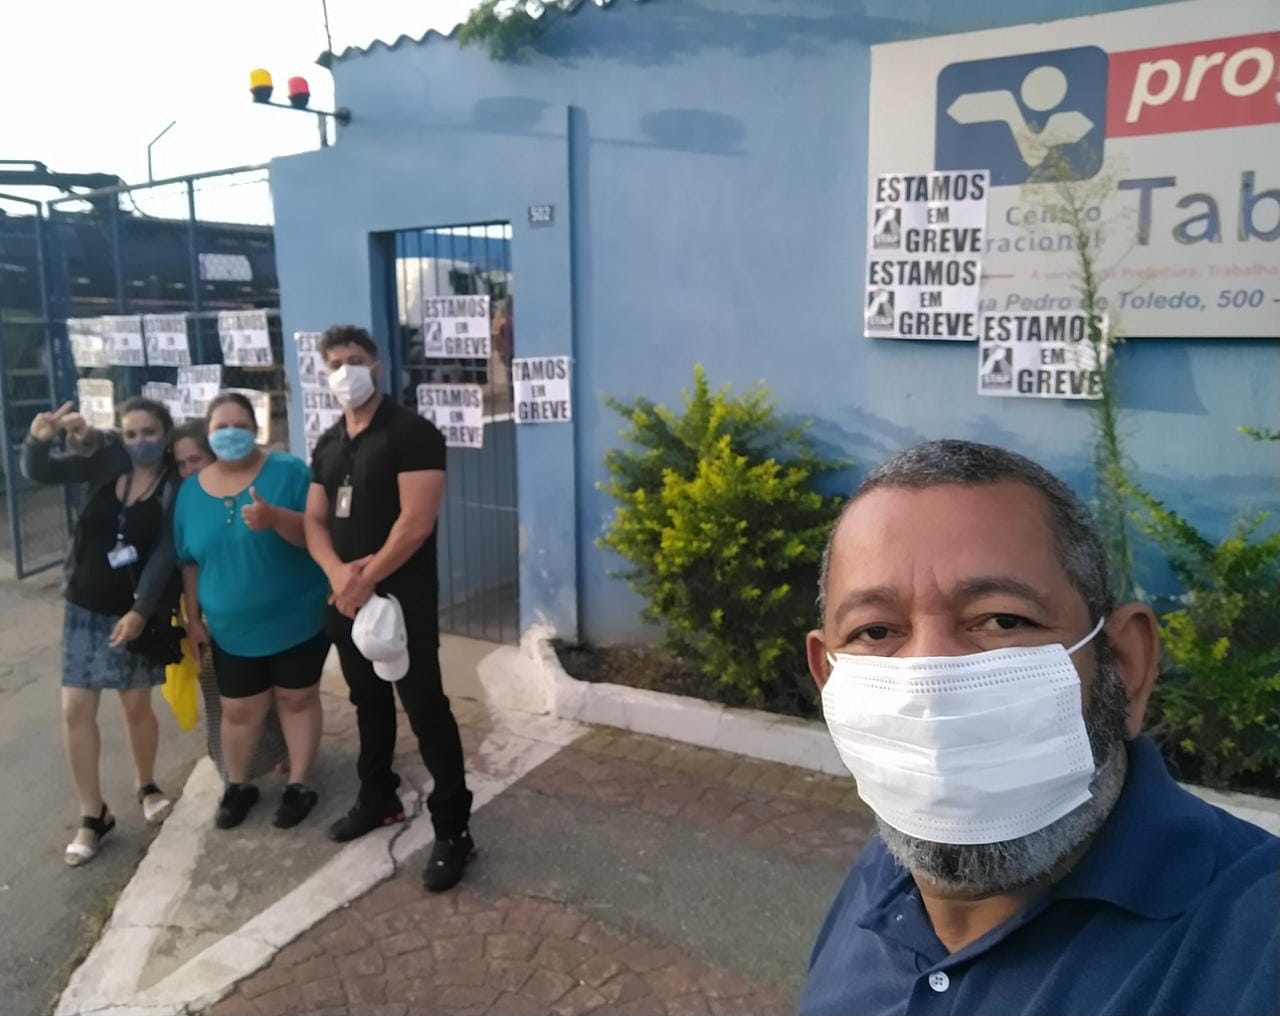 Trabalhadores entram em greve contra o fechamento da Proguaru